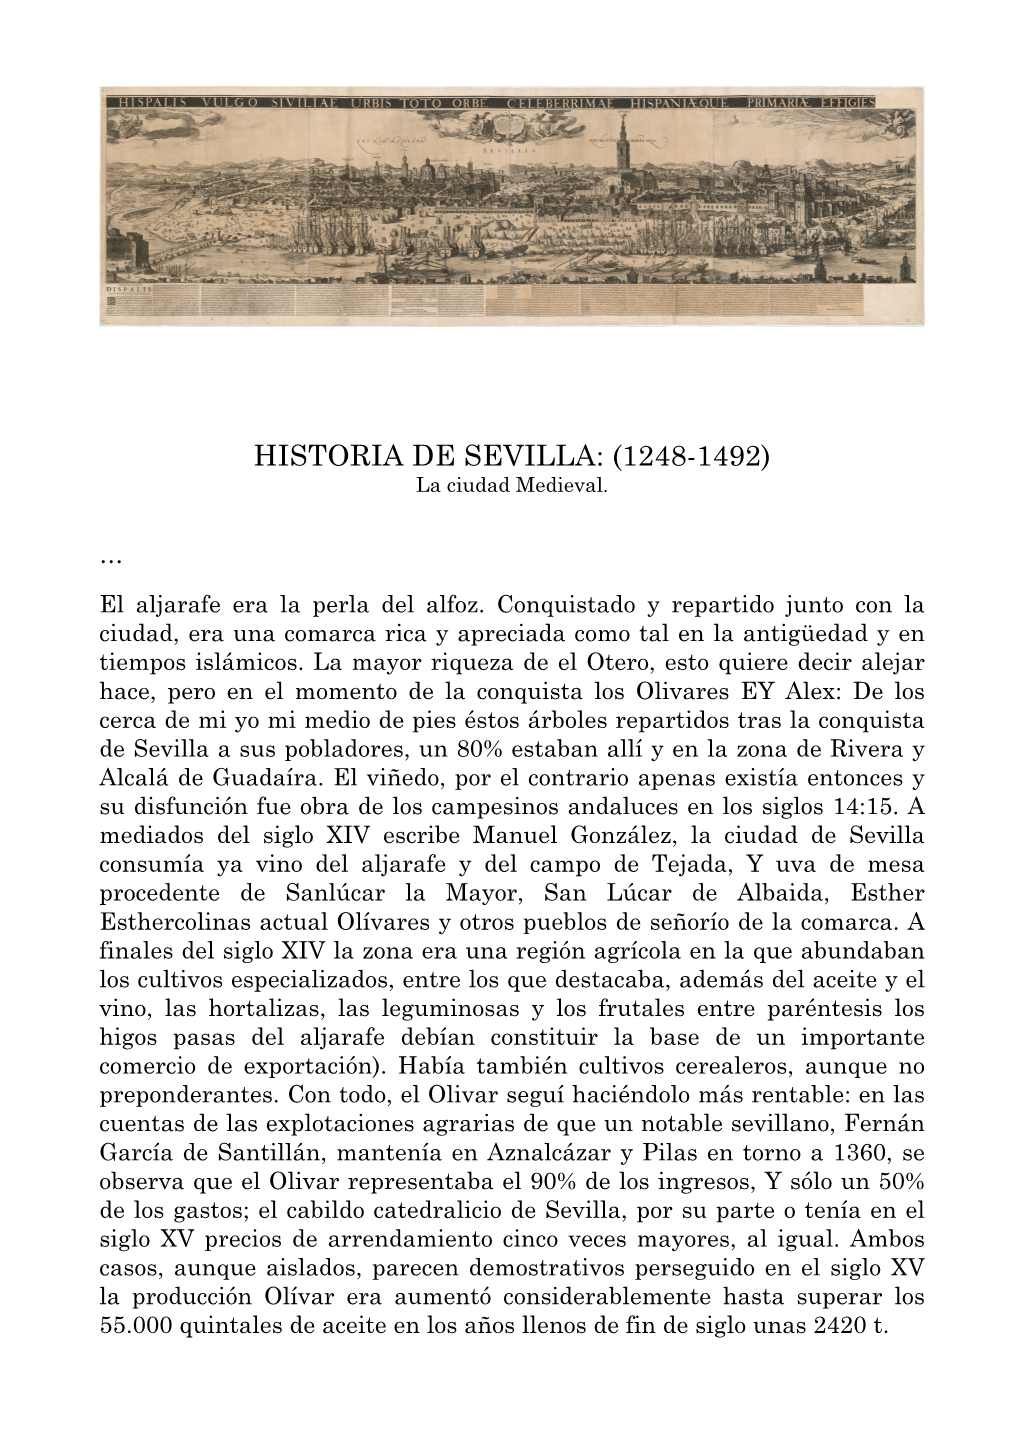 HISTORIA DE SEVILLA: (1248-1492) La Ciudad Medieval